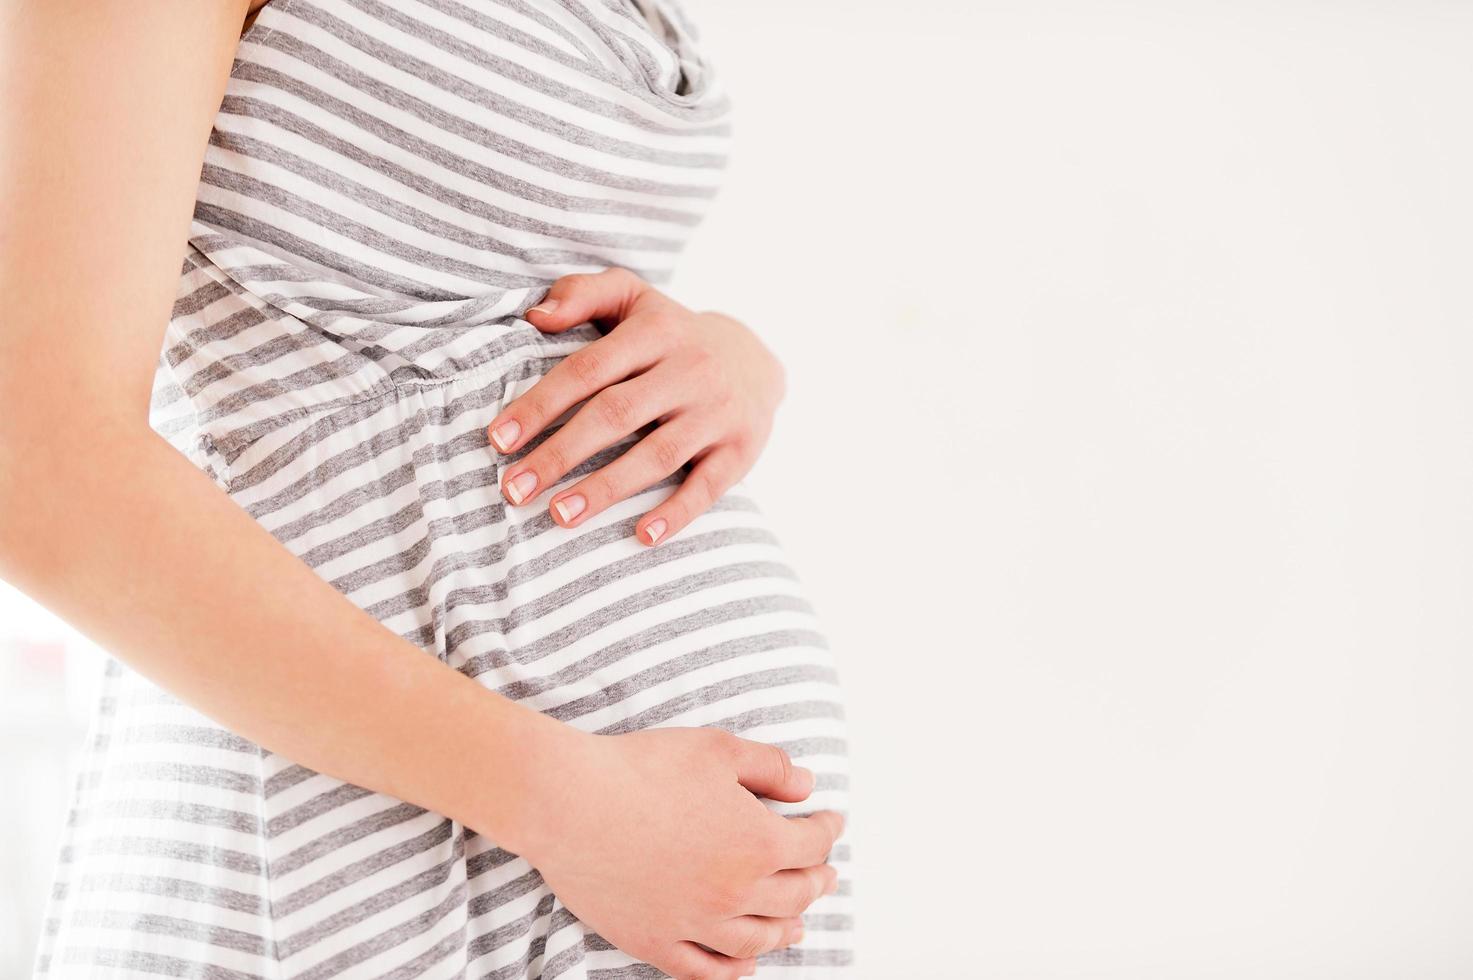 gravidez. vista lateral imagem recortada de mulher grávida segurando as mãos no abdômen foto